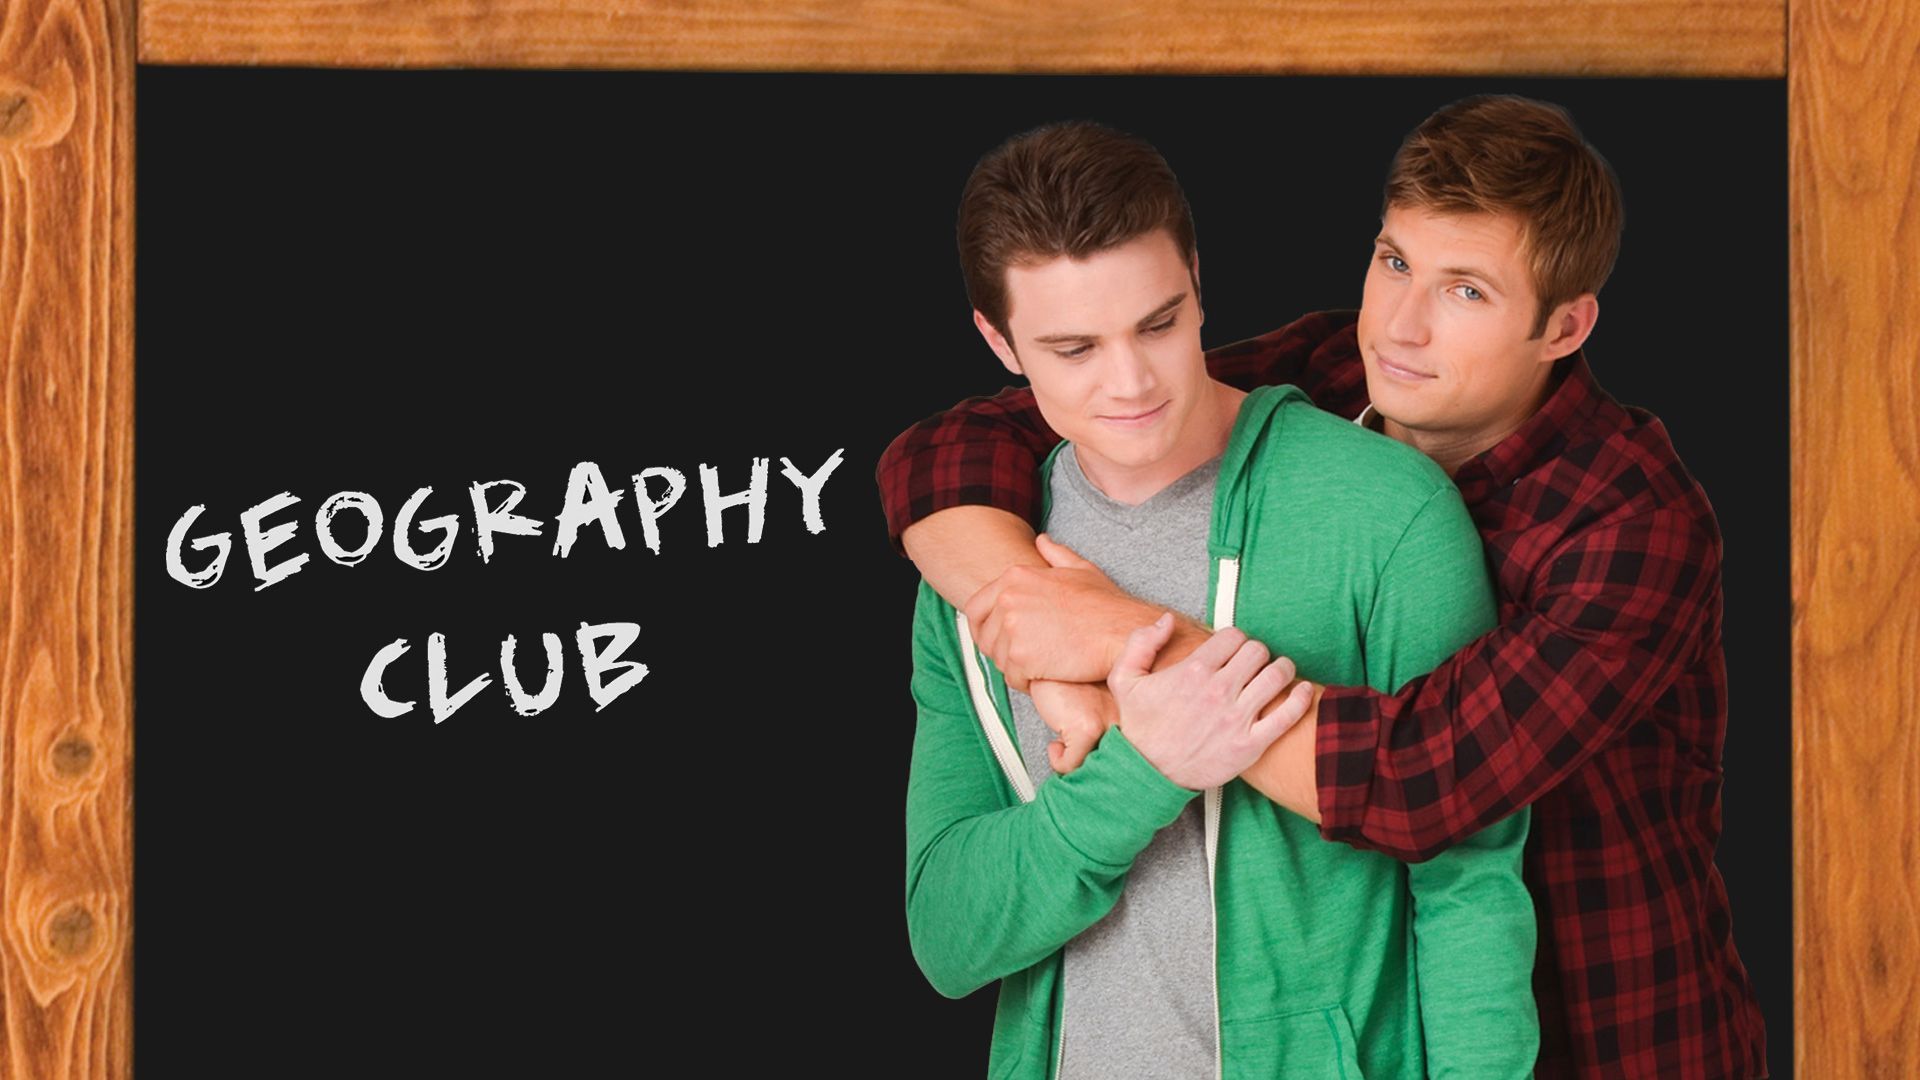 Geography Club 2013 (Gay Movie) - Bilibili